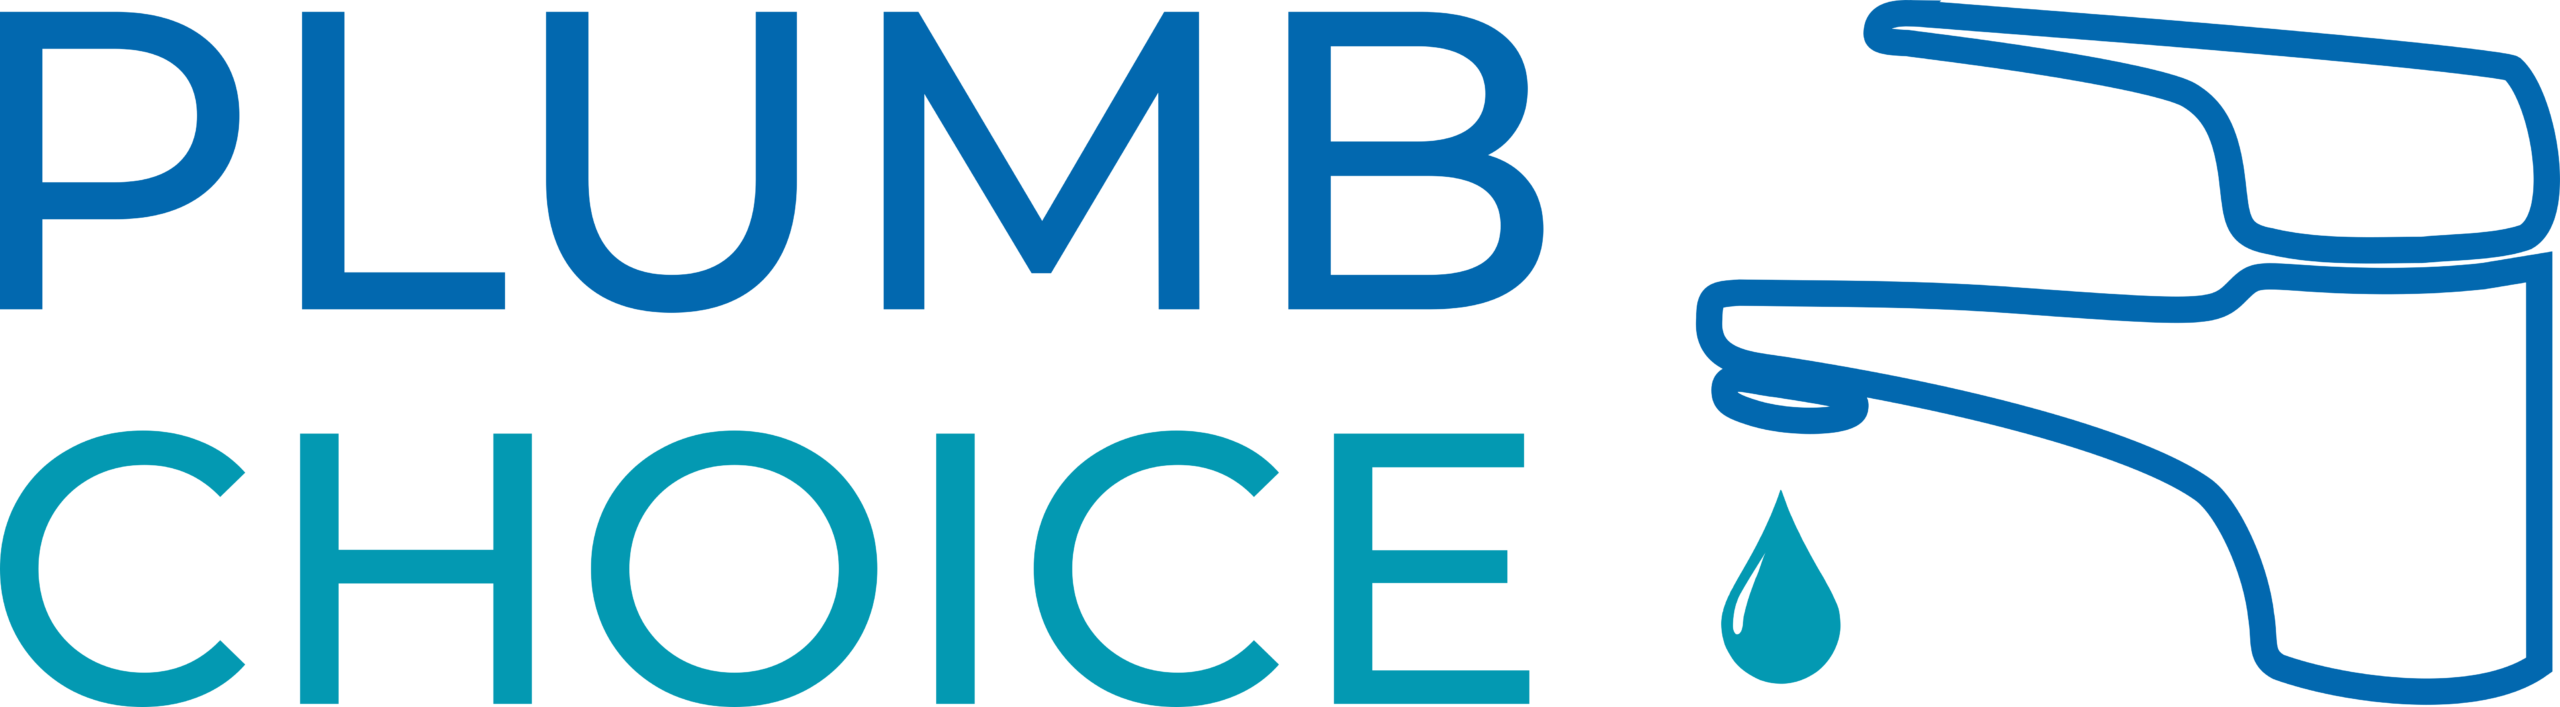 Plumbchoice logo variation 1 scaled